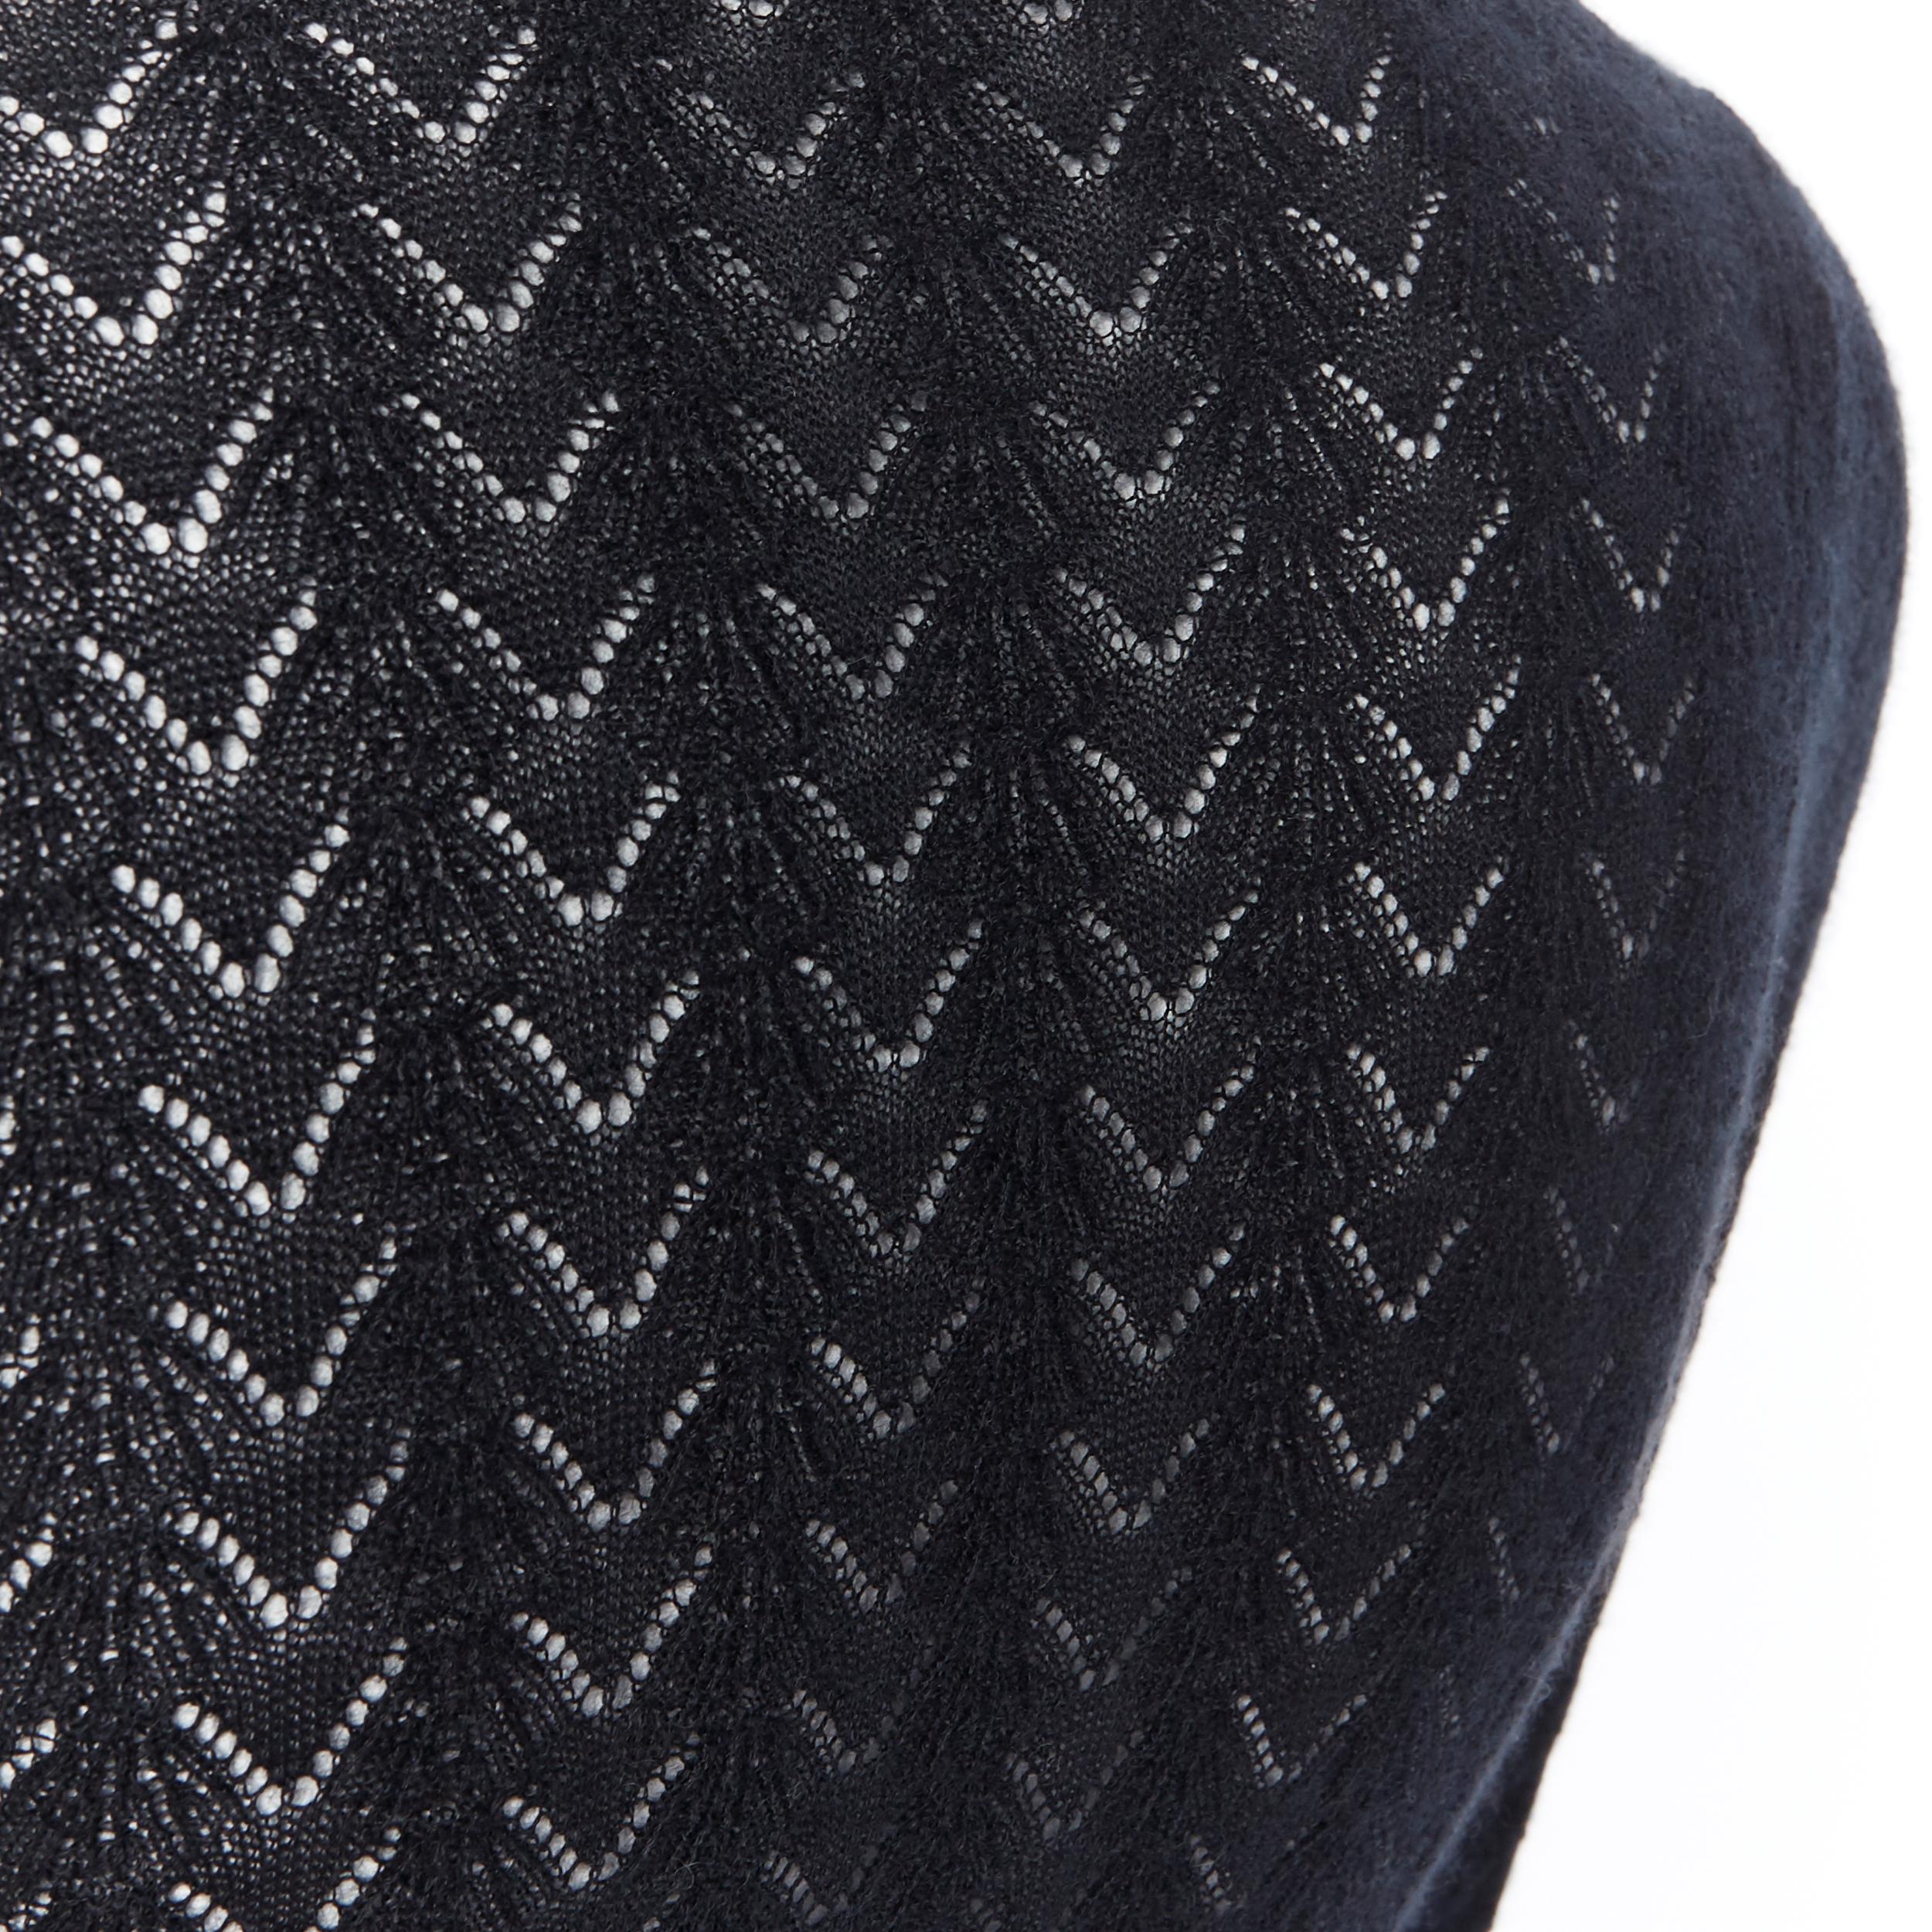 LOUIS VUITTON 100% cashmere black lace loose knit  turtleneck sweater top M 2